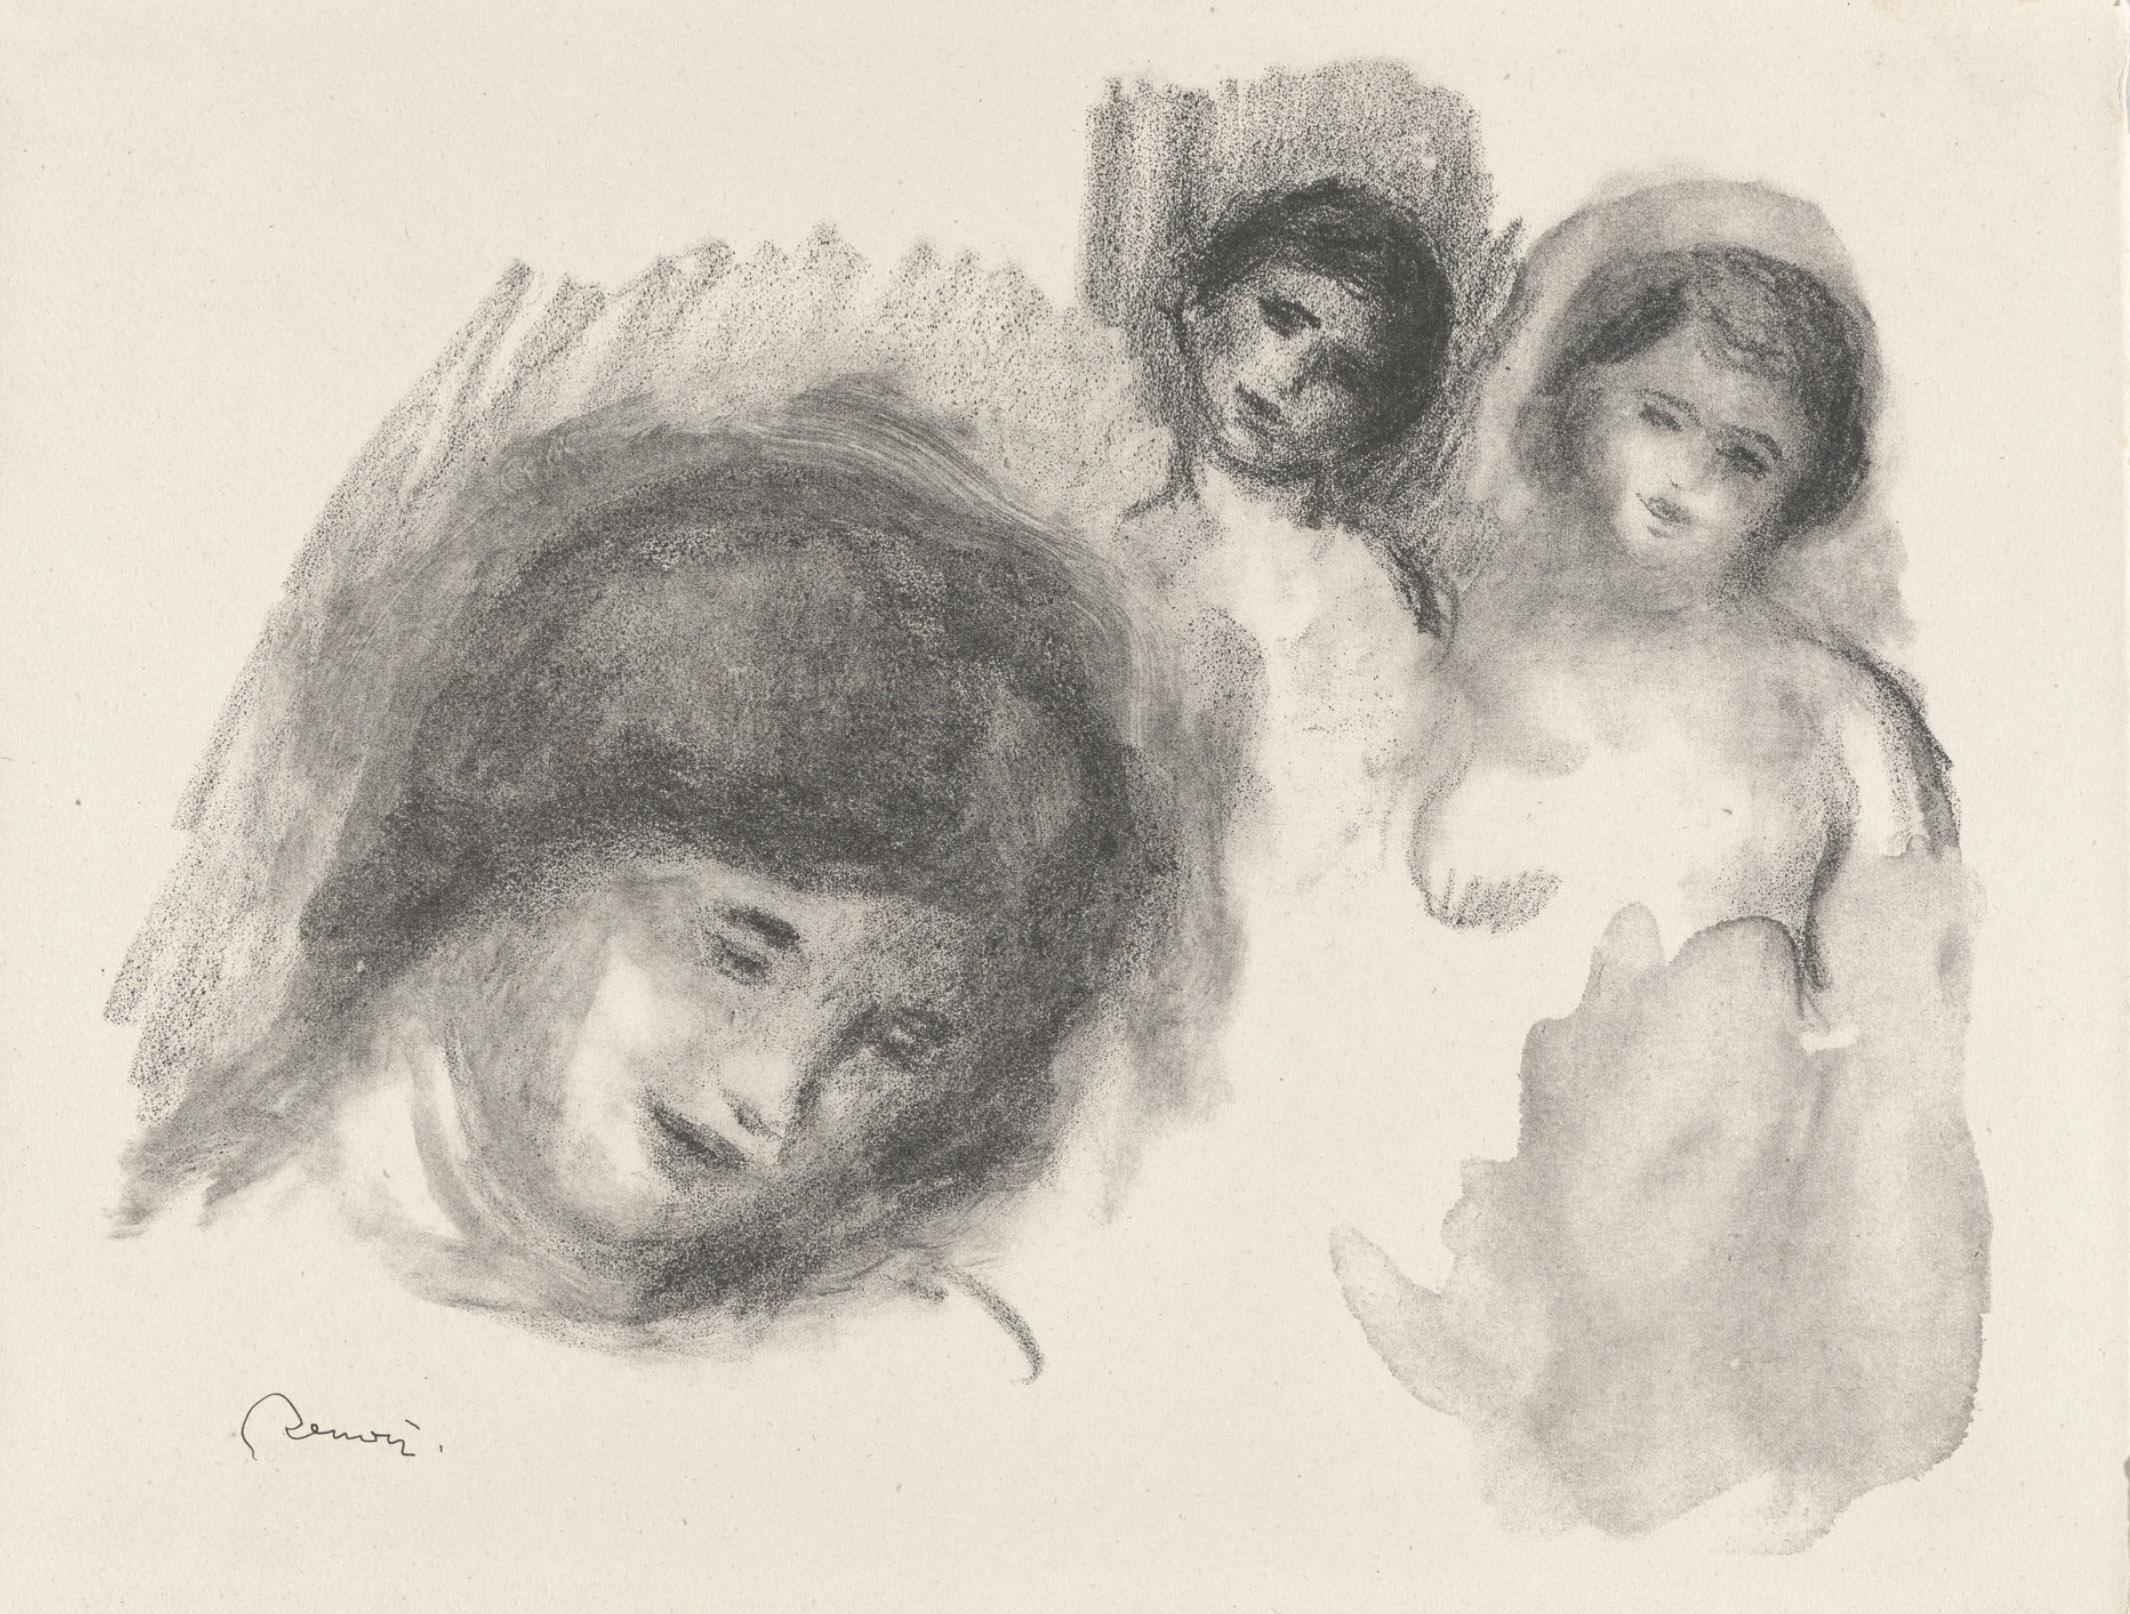 Pierre-Auguste Renoir Portrait Print - La Pierre au Trois Croquis (The Stone with Three Sketches), 1904